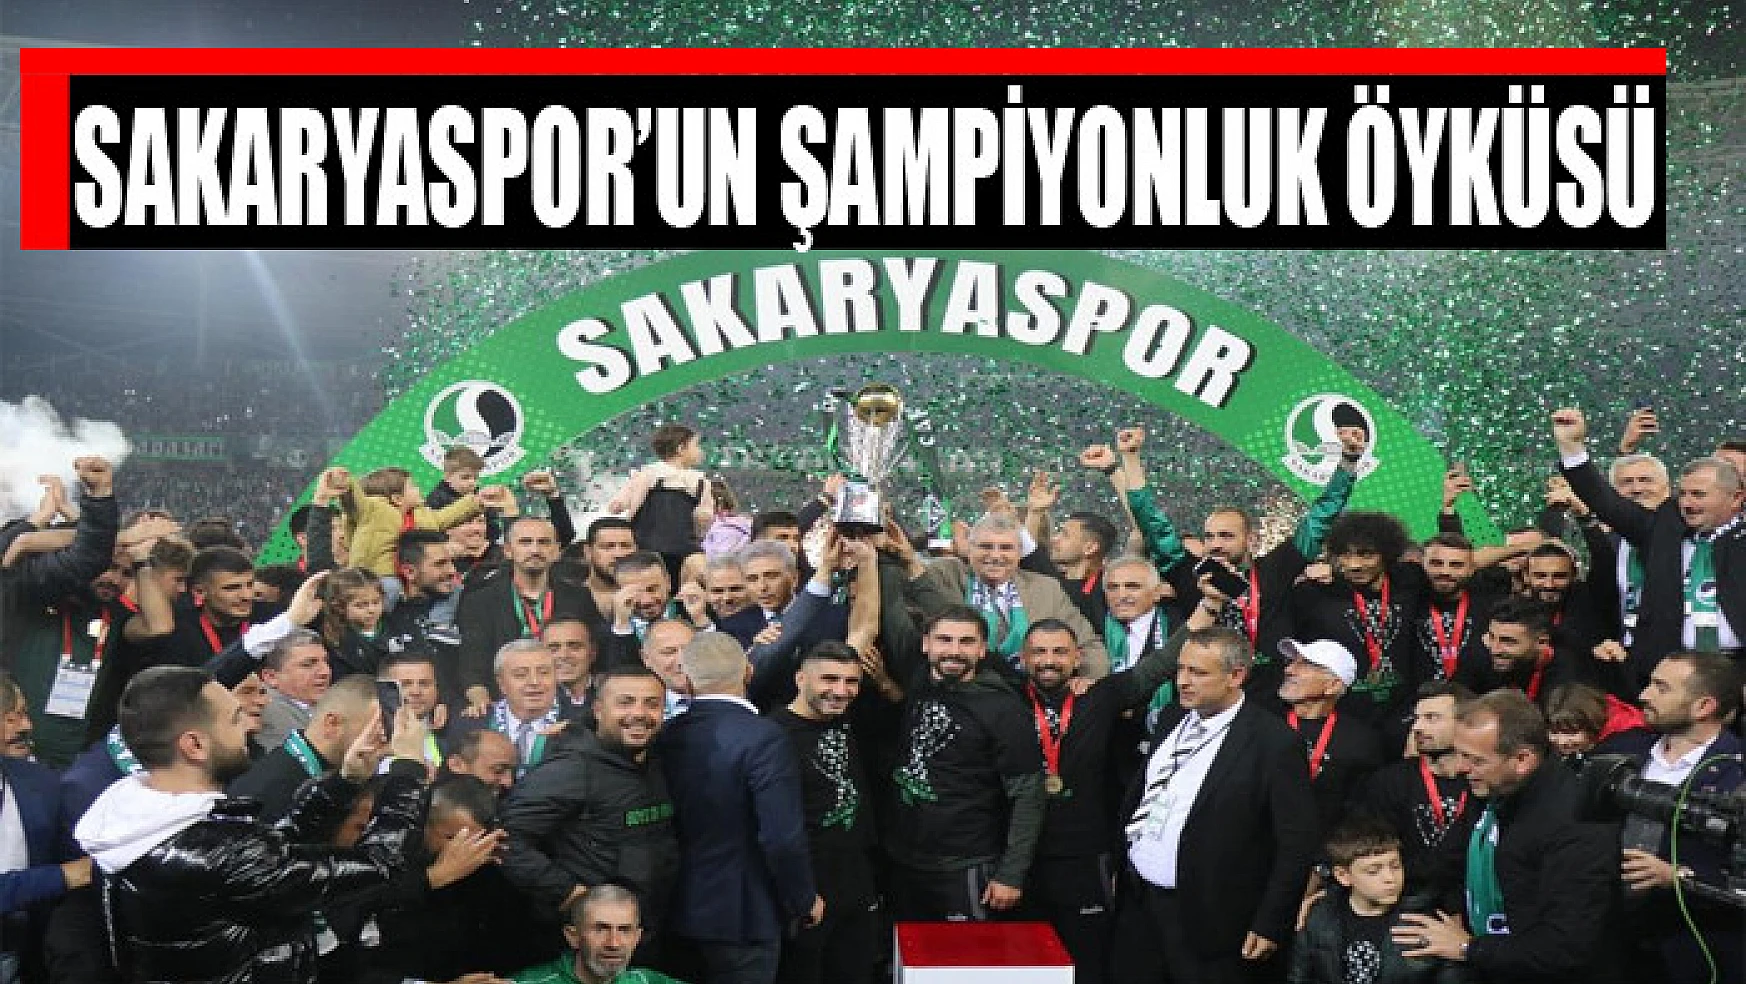 Sakaryaspor'un şampiyonluk öyküsü